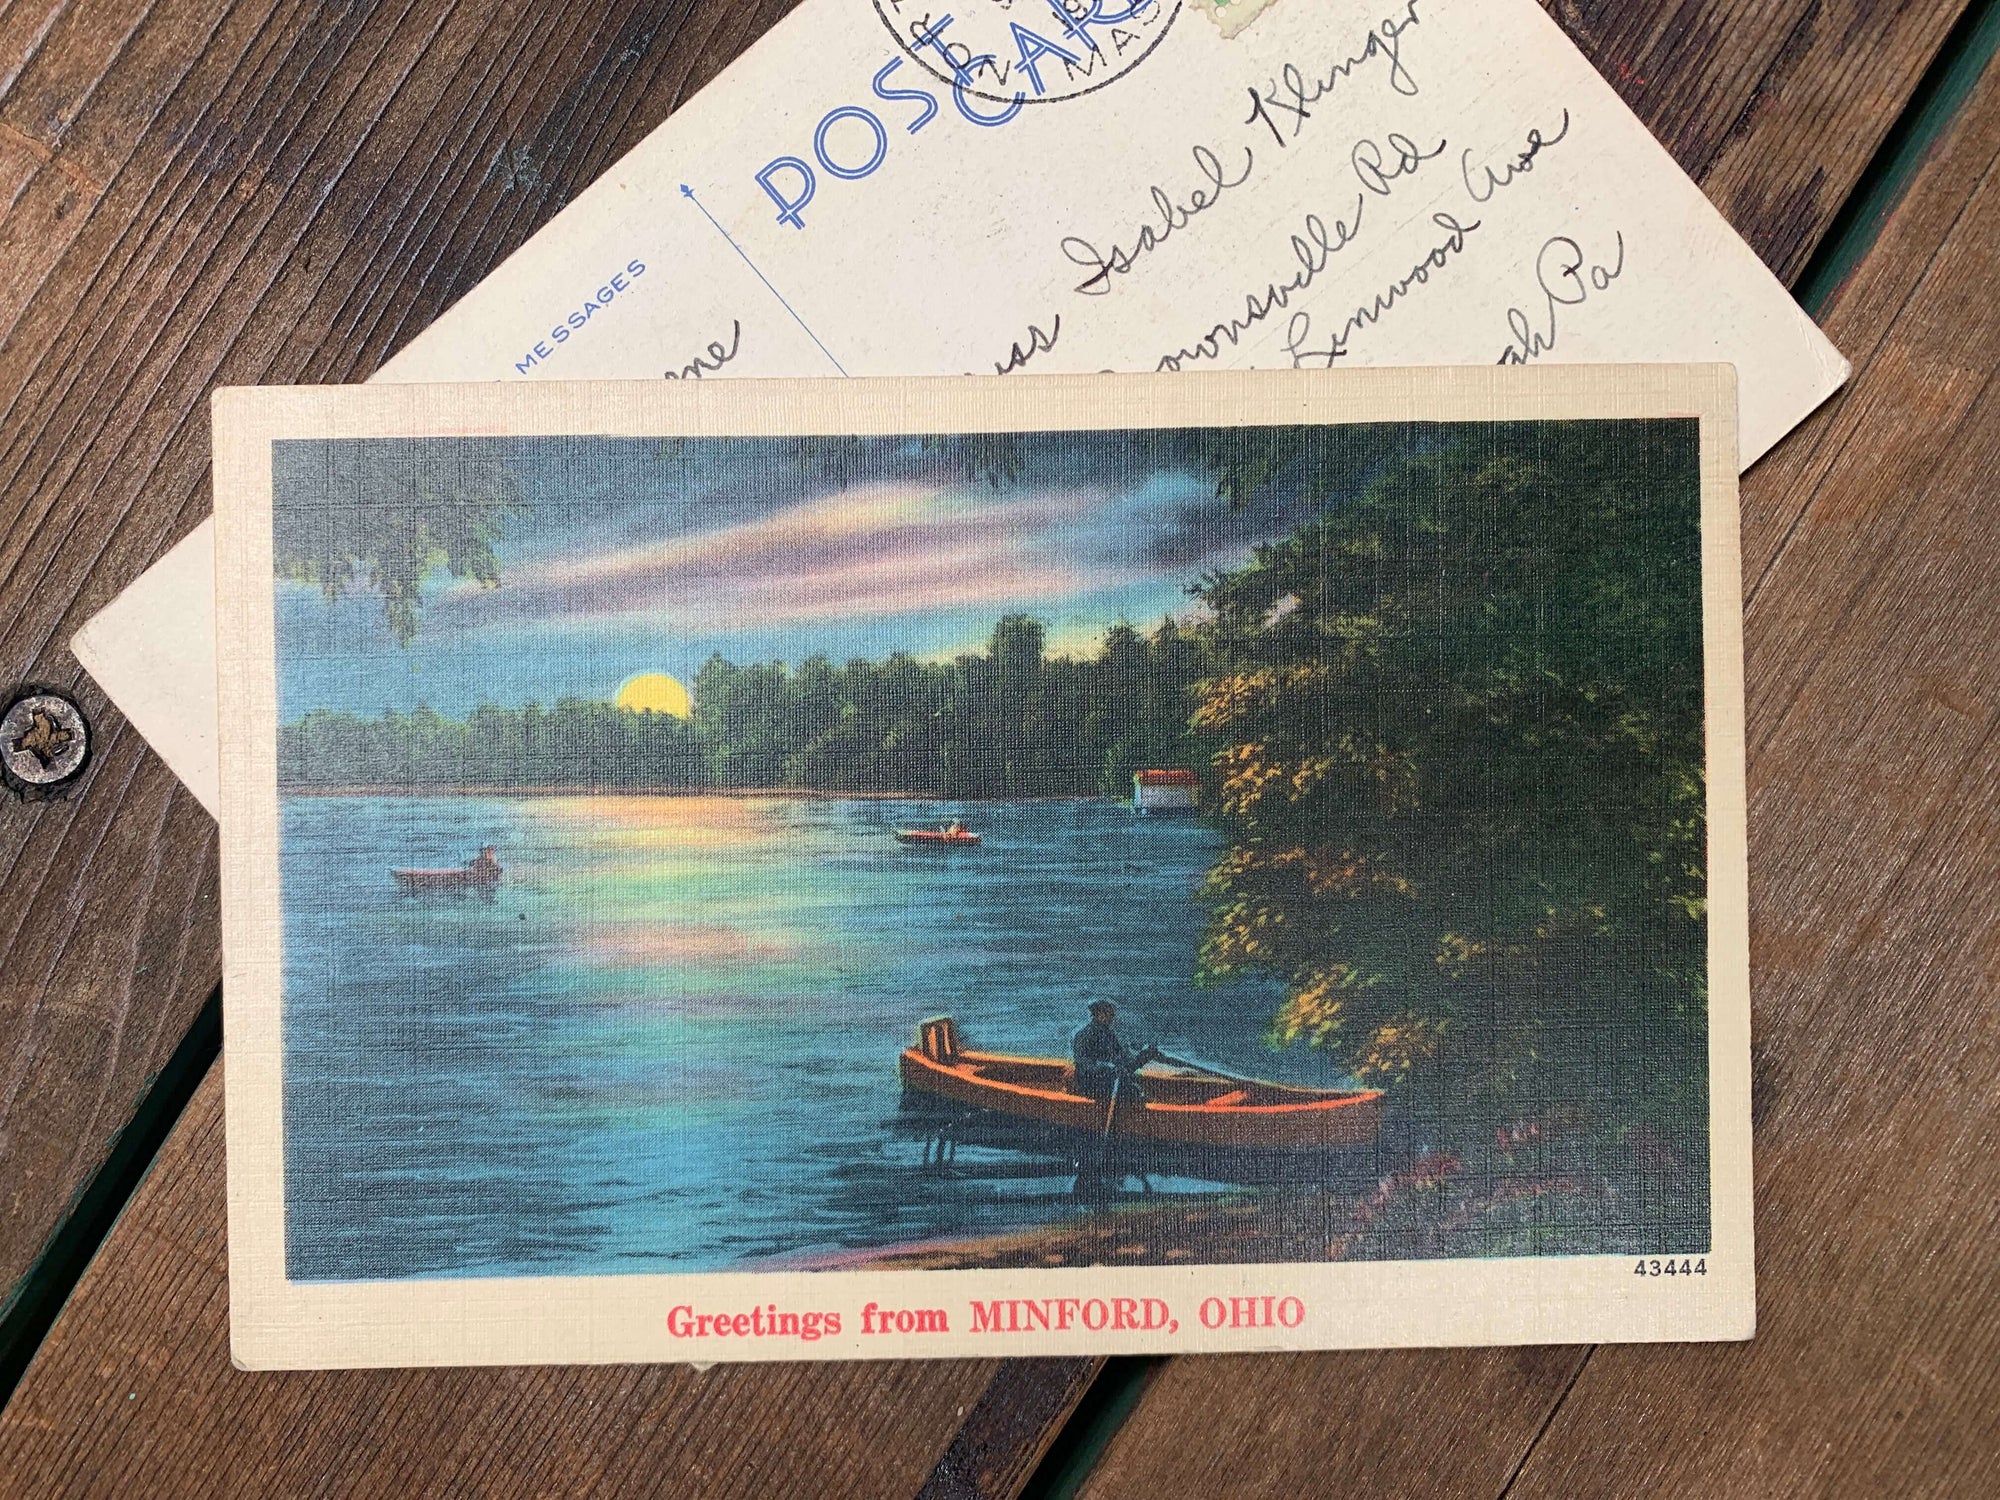 Object Inspired Episode 3:  Even More Vintage Postcards